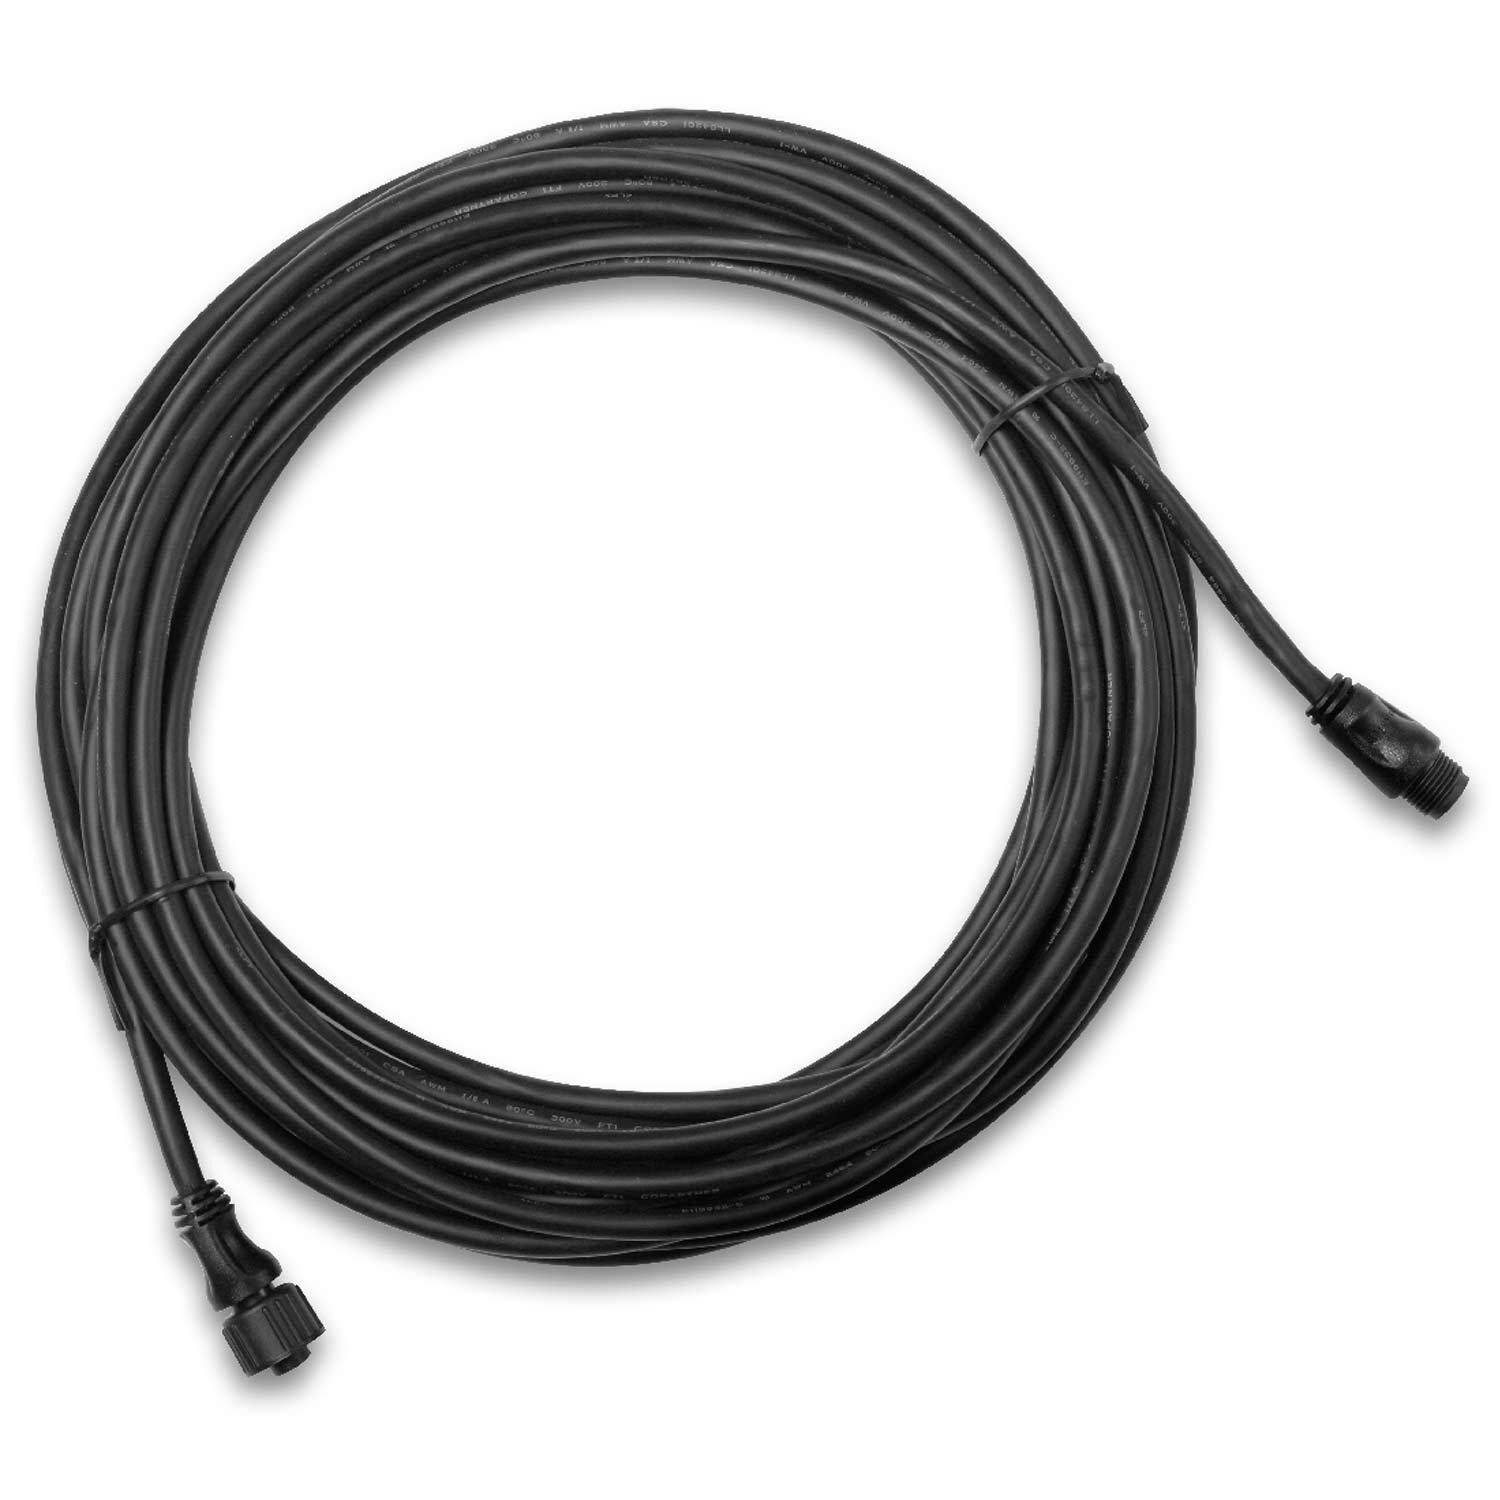 Garmin NMEA 2000 Backbone/Drop Cable for sale online 4M 